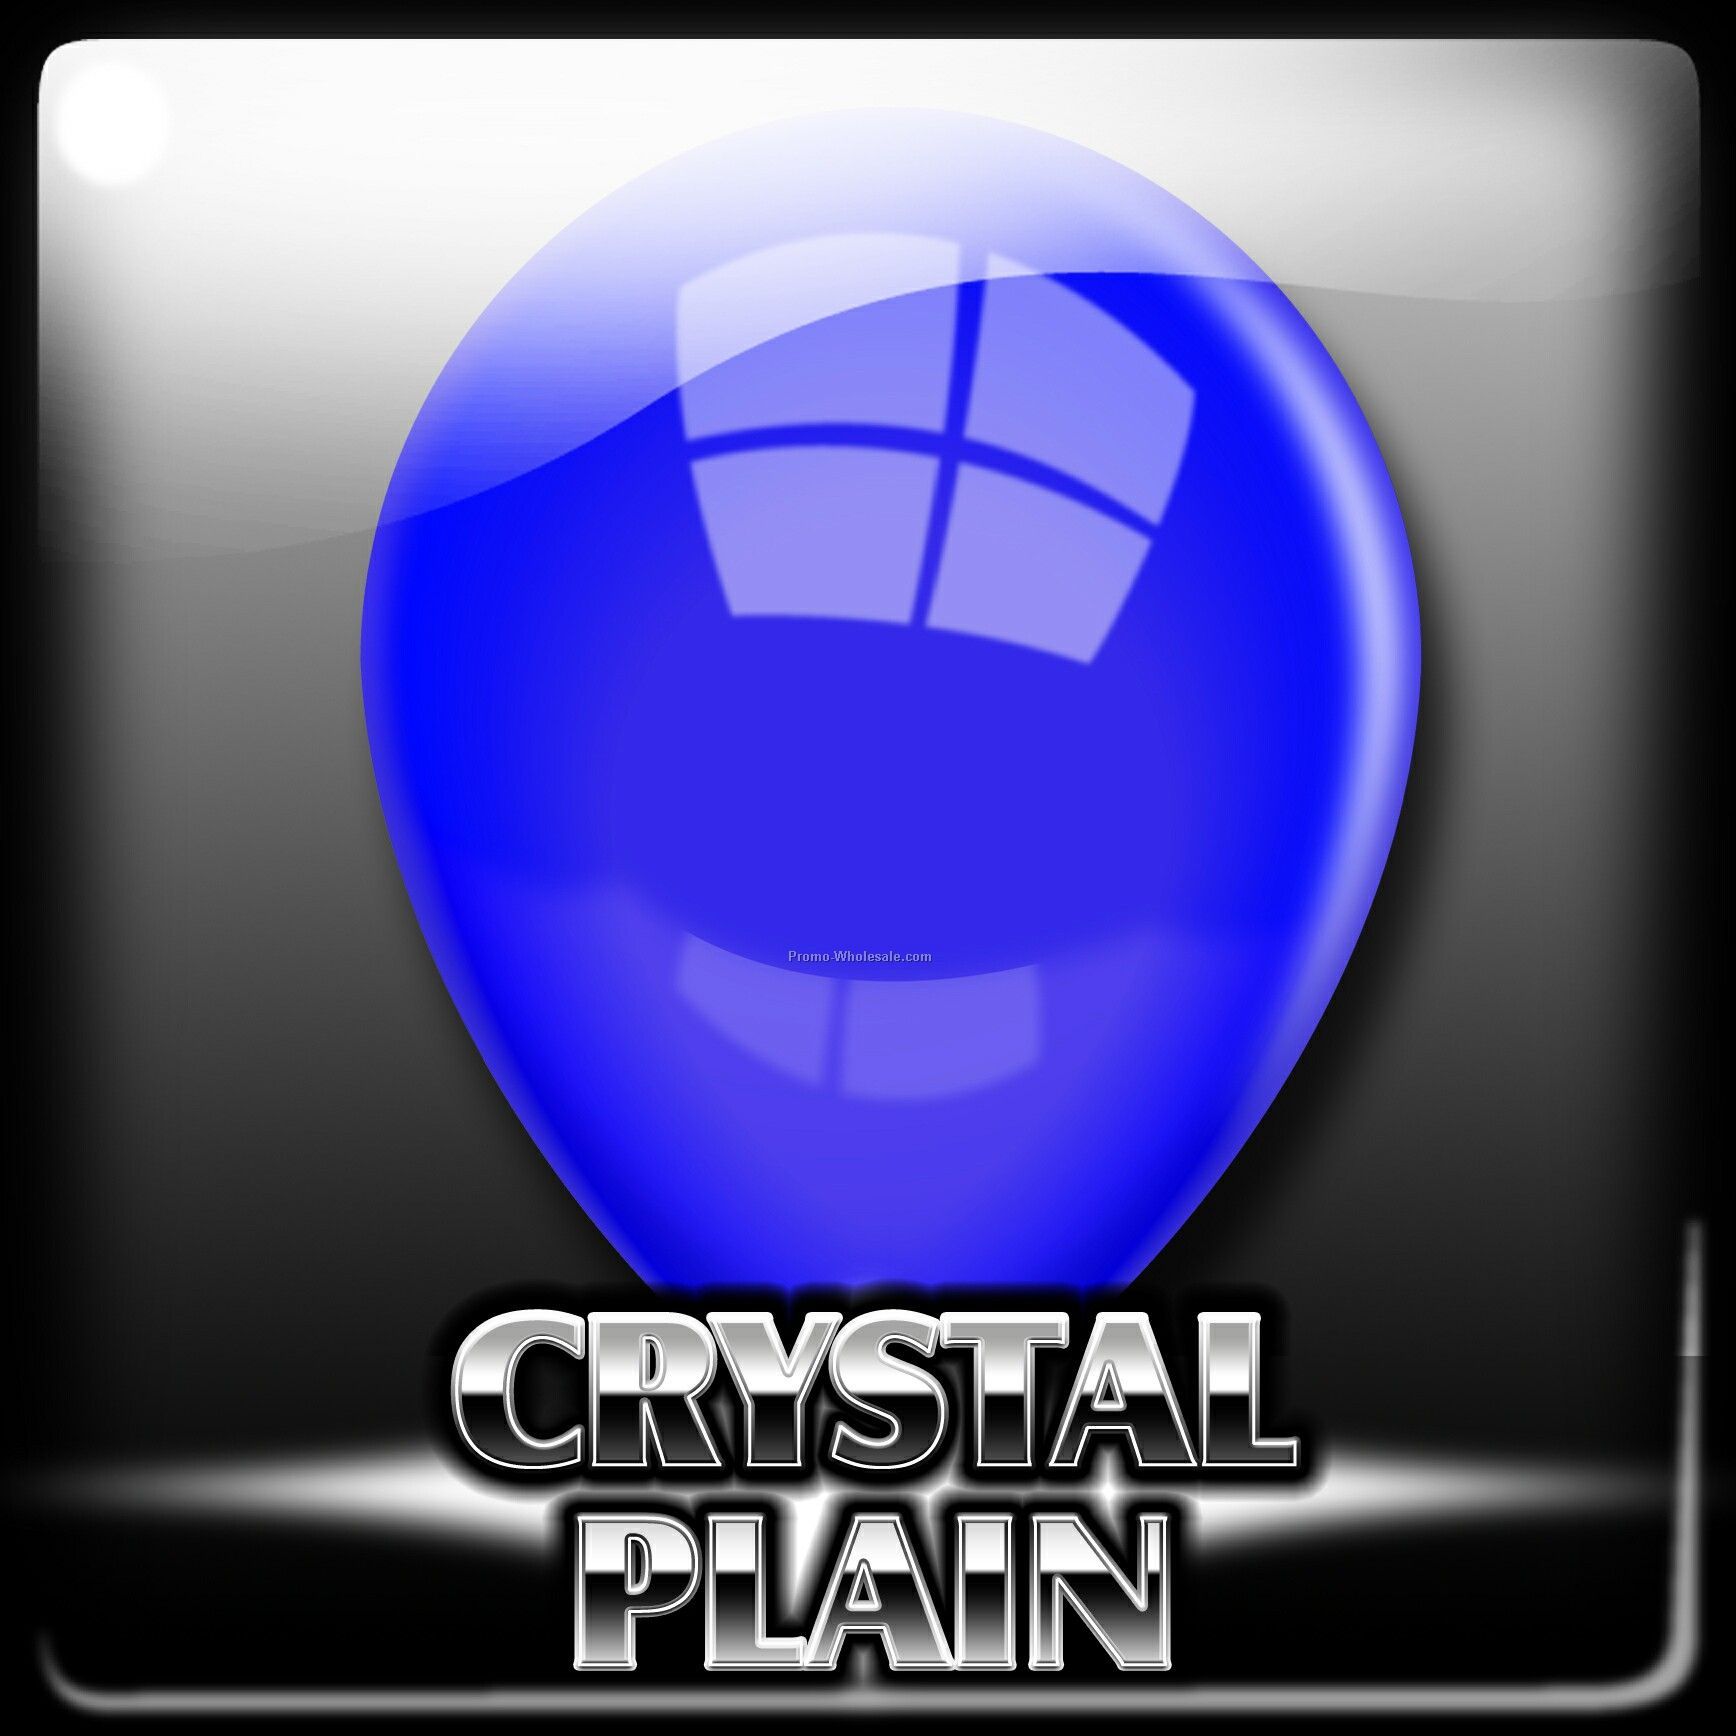 12" Unimprinted Crystal Latex Balloon